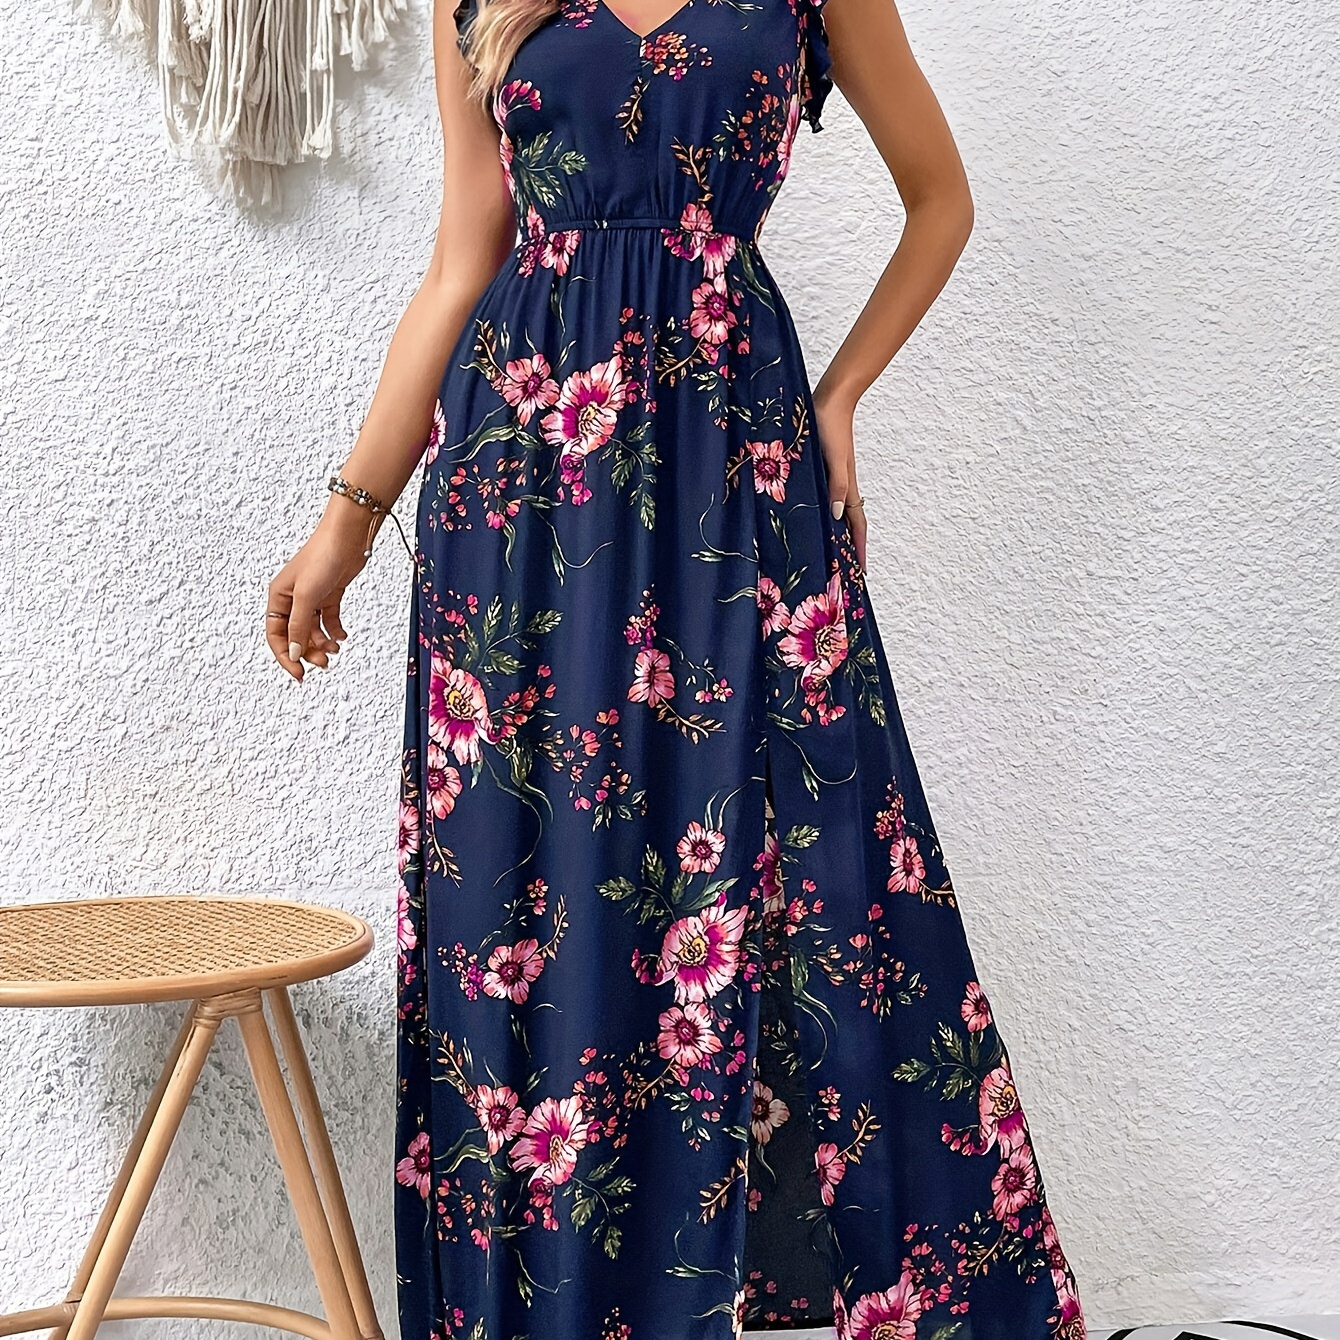 

Floral Print High Waist Swing Maxi Dress, Elegant Split Hem V Neck Dress For Spring & Summer, Women's Clothing